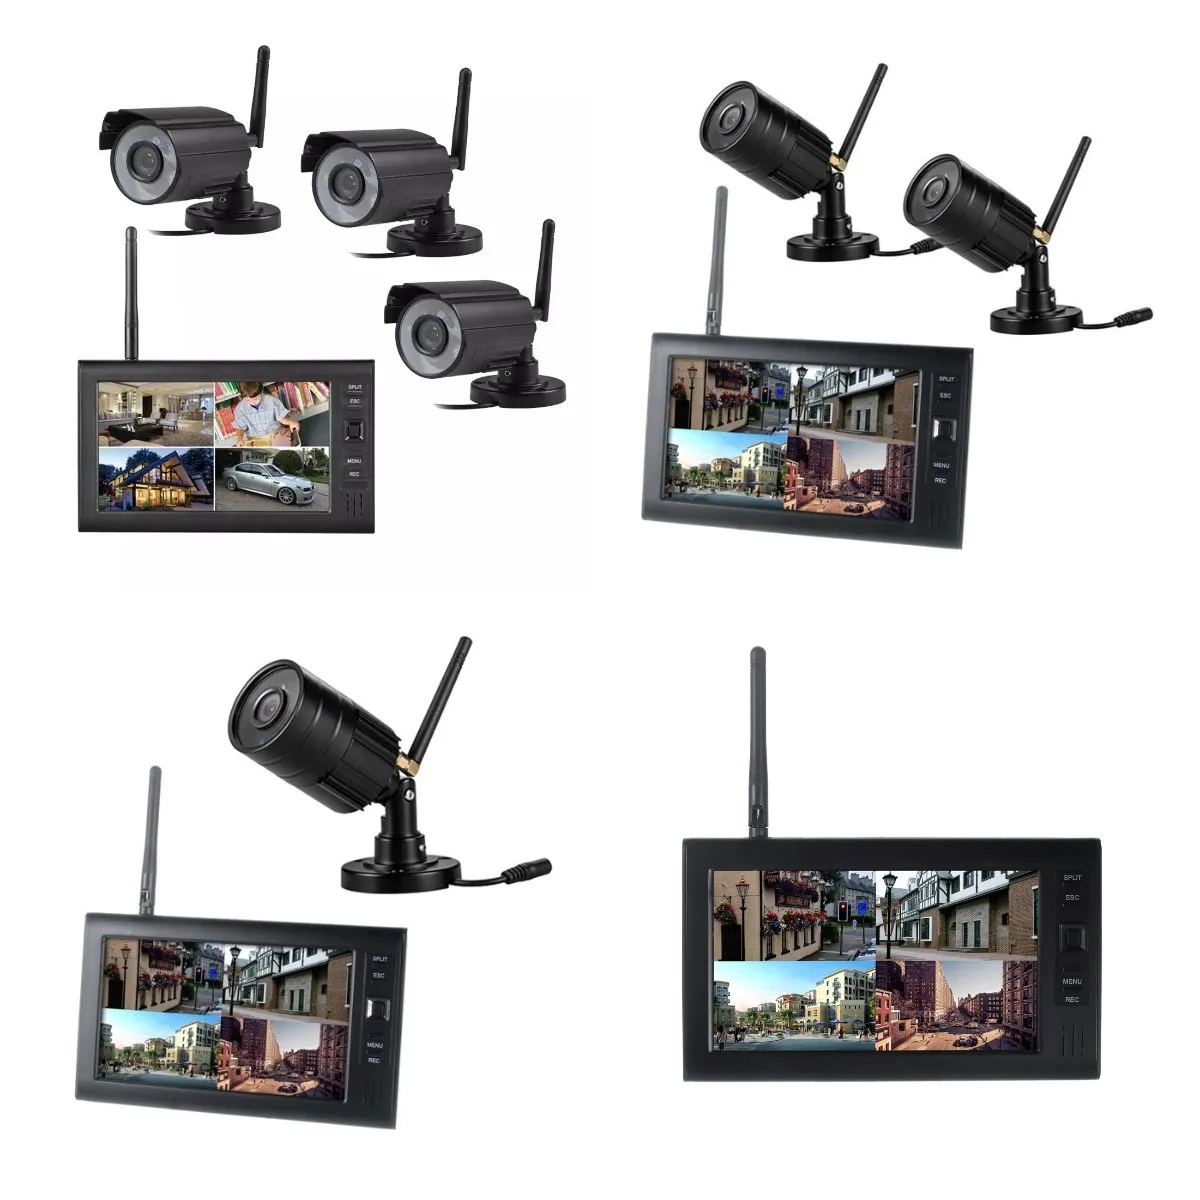 

Система видеонаблюдения с 3 камерами и ЖК-дисплеем 7 дюймов, 2,4 ГГц